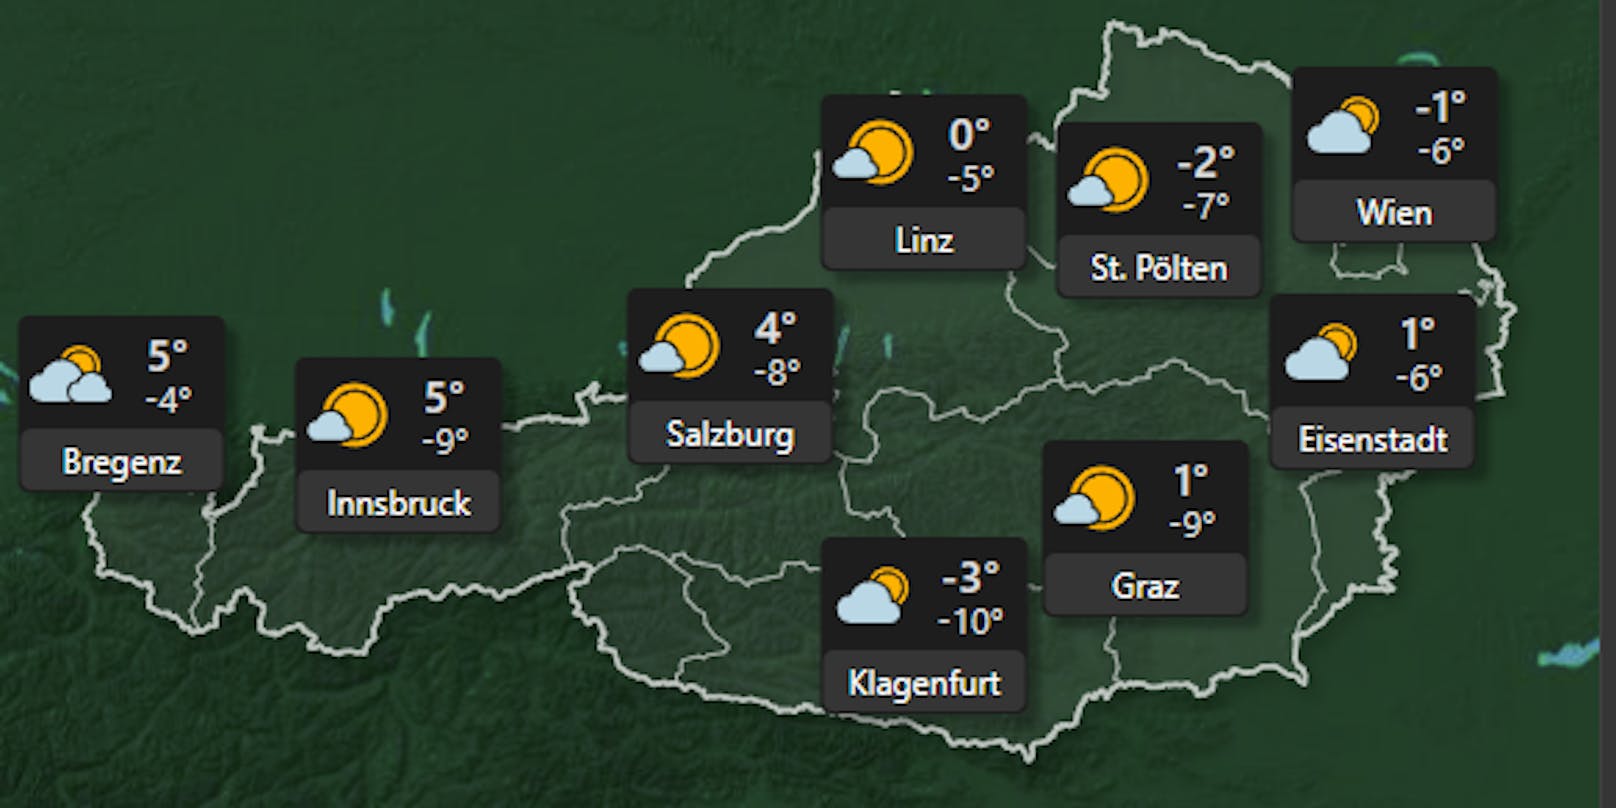 Am 8. Dezember ist derzeit viel Sonne bei frischen Temperaturen von bis zu -10 Grad zu erwarten. Vereinzelt kann es im Westen Österreichs zu Schneefällen kommen, ansonsten sollte der Feiertag in ganz Österreich eher trocken über die Bühne gehen.&nbsp;